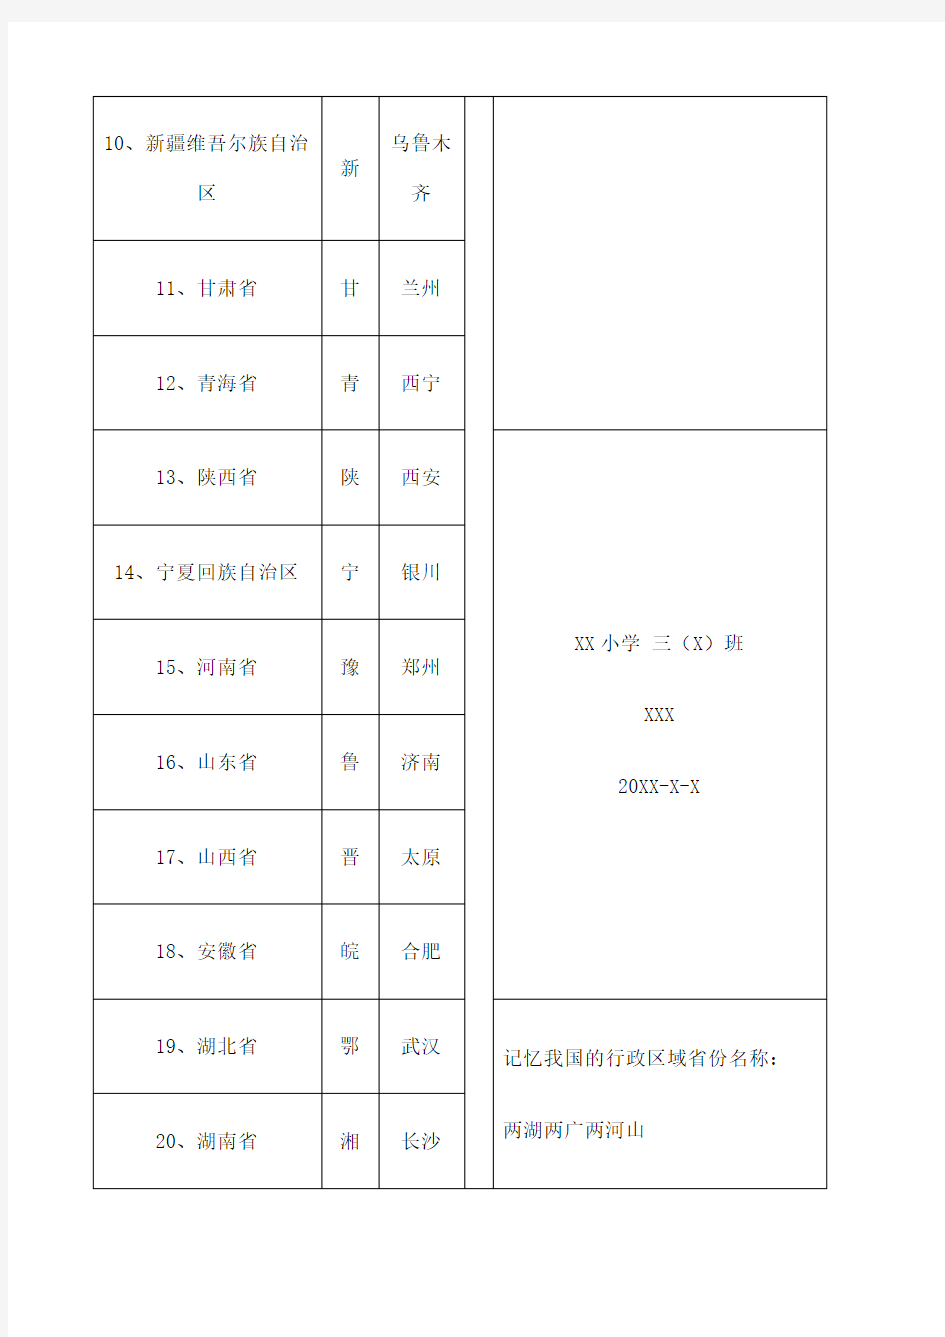 中国 个省份简称及省会城市列表又记忆方法 